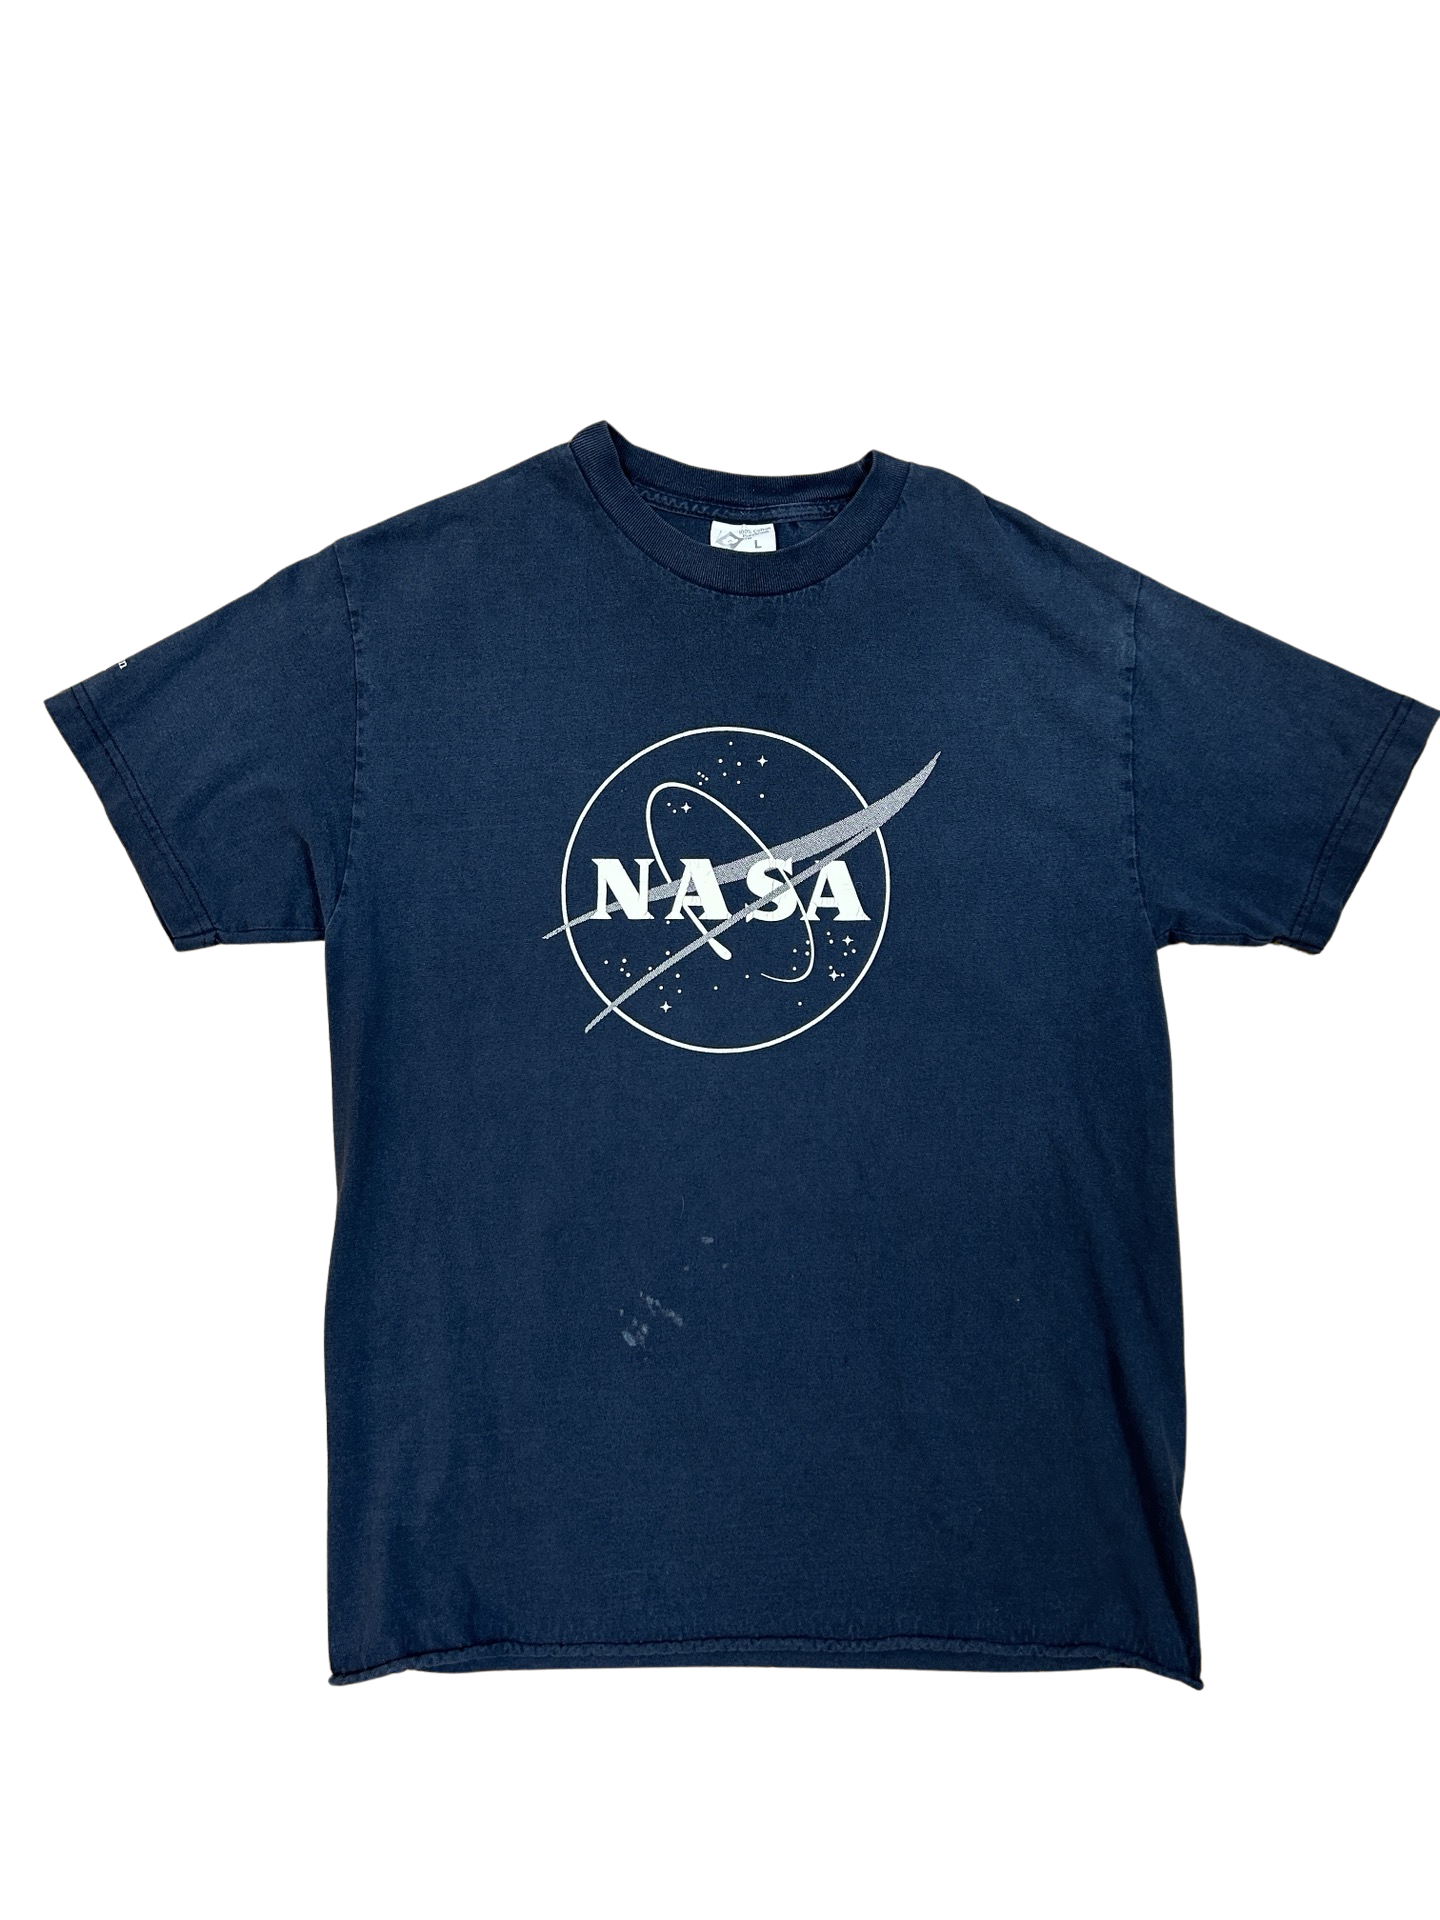 NASA tee